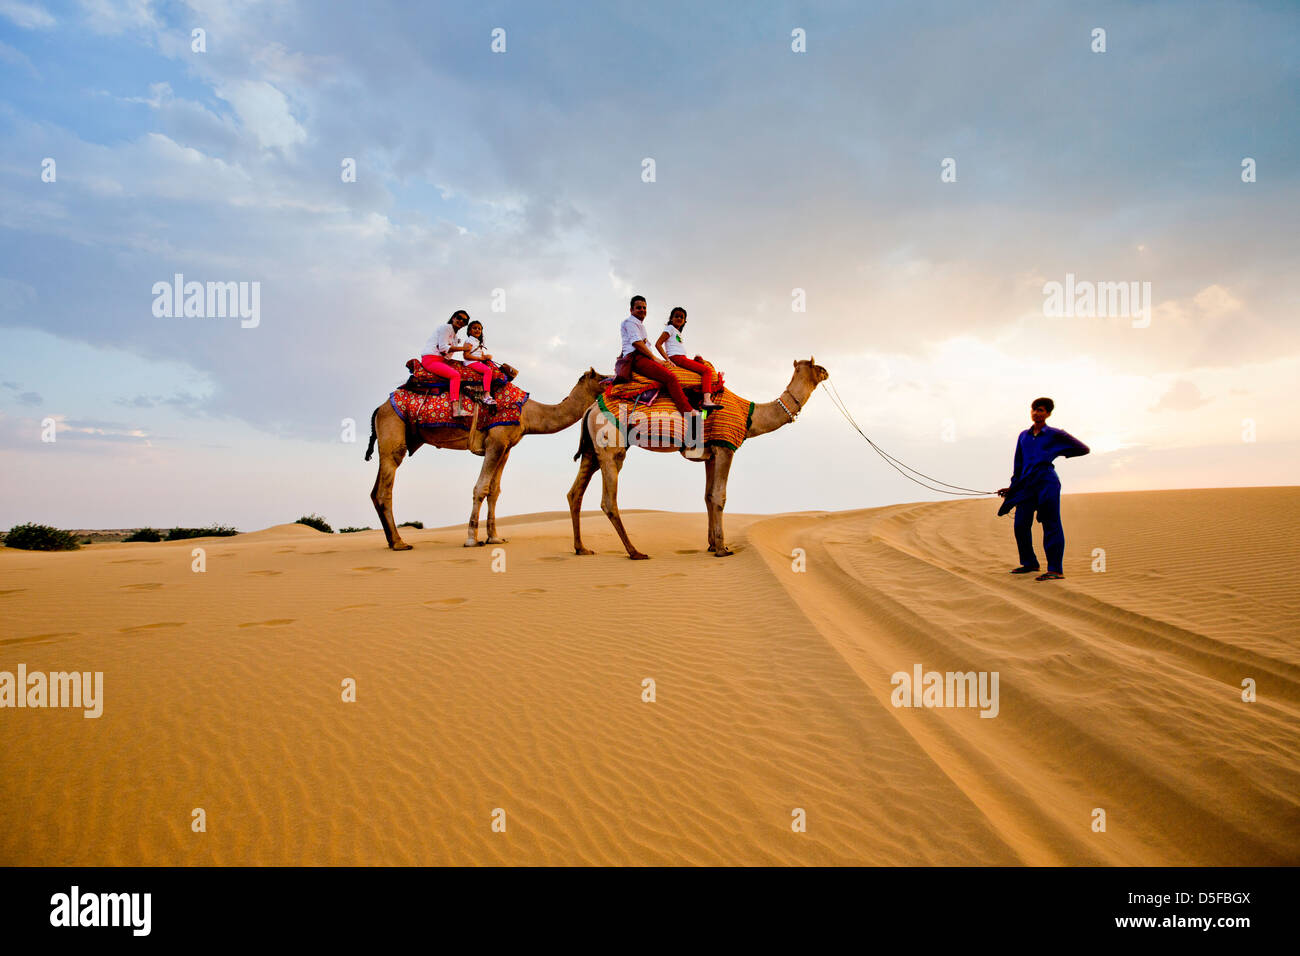 Los turistas disfrutando del Safari del camello en un desierto, el desierto de Thar, Jaisalmer, Rajasthan, India Foto de stock